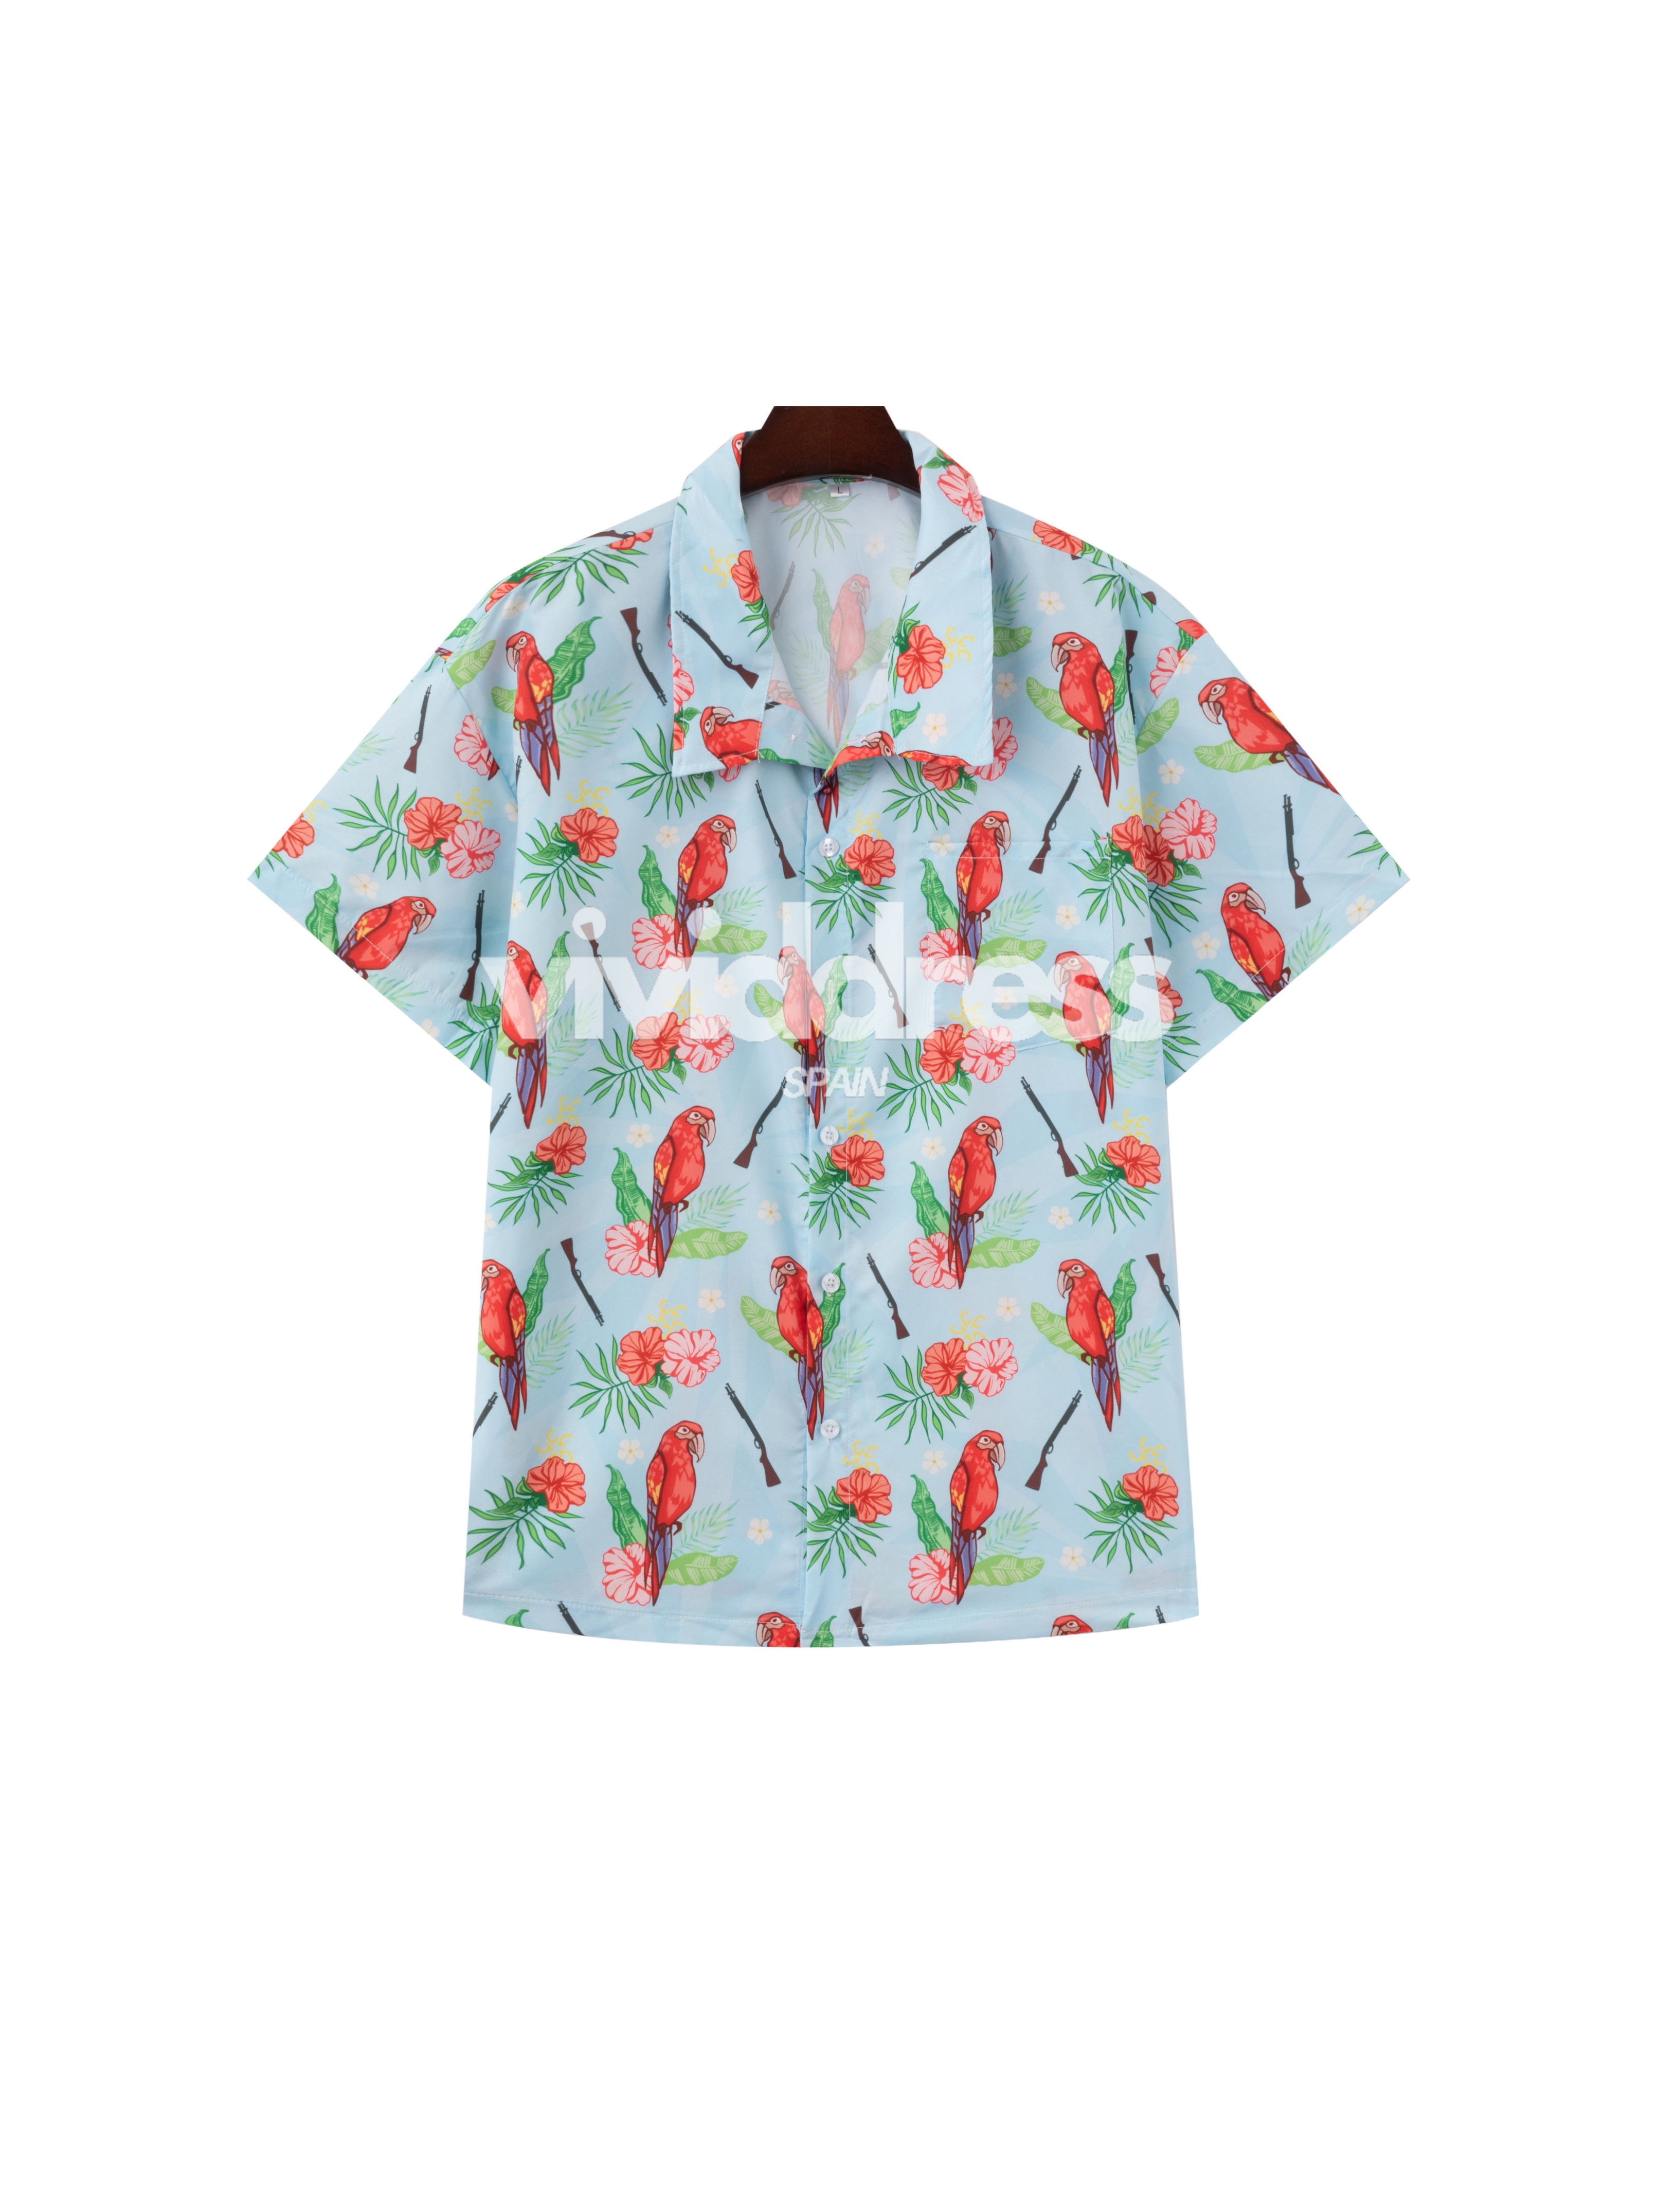 Men's Gun & Bird Print Beach Hawaiian Holiday Short Sleeve Shirt